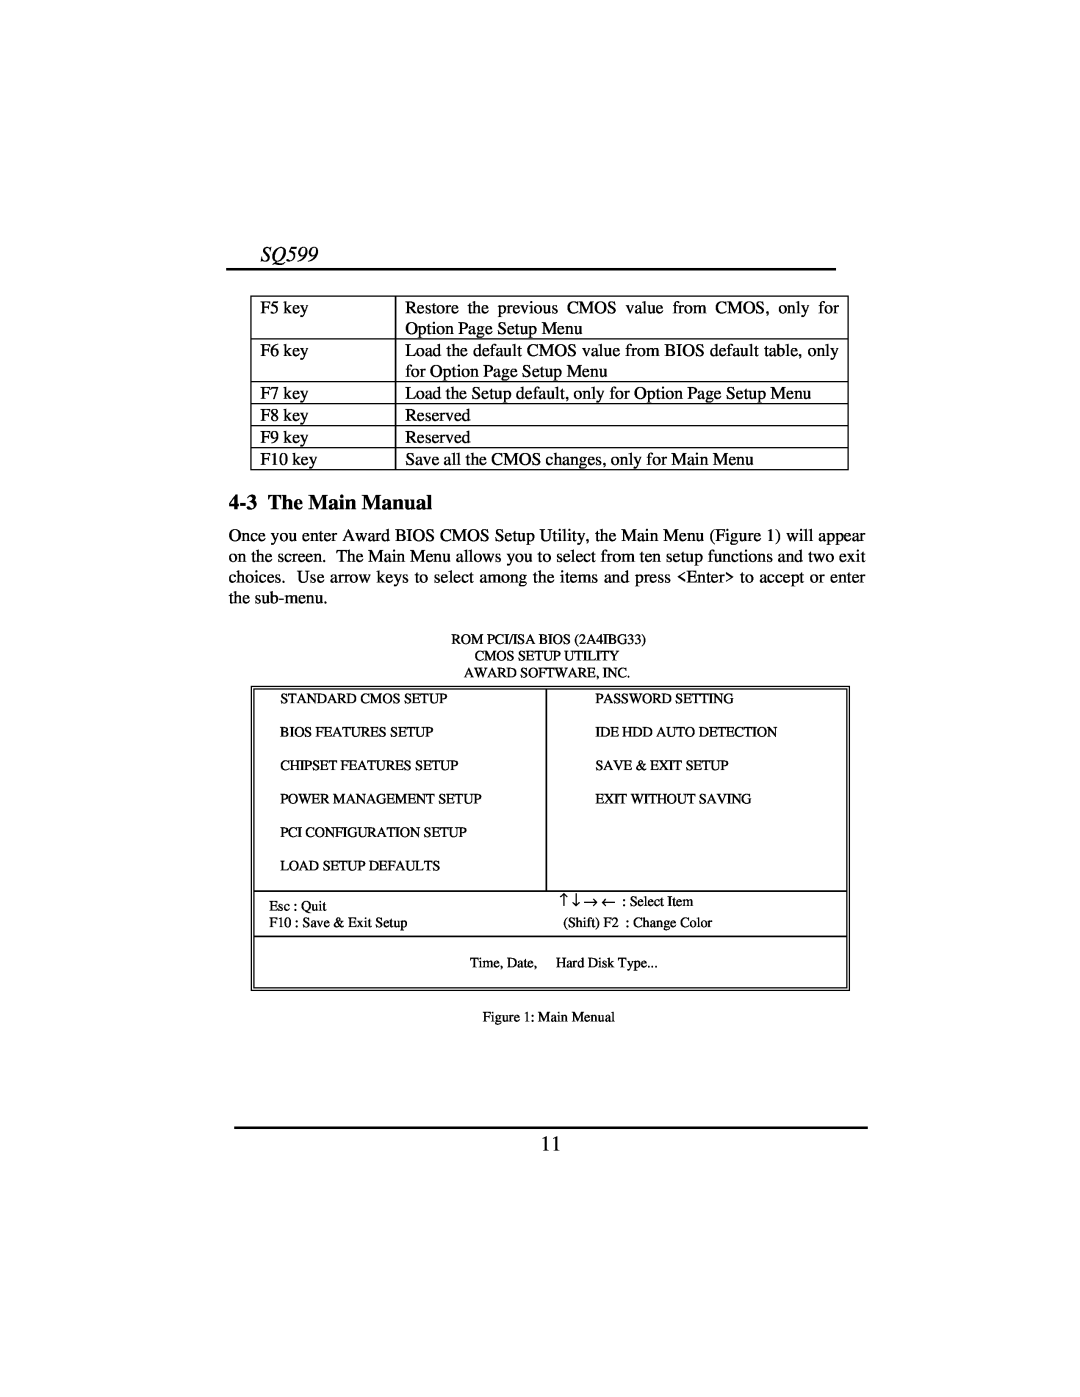 Intel SQ599 manual 4-3The Main Manual 